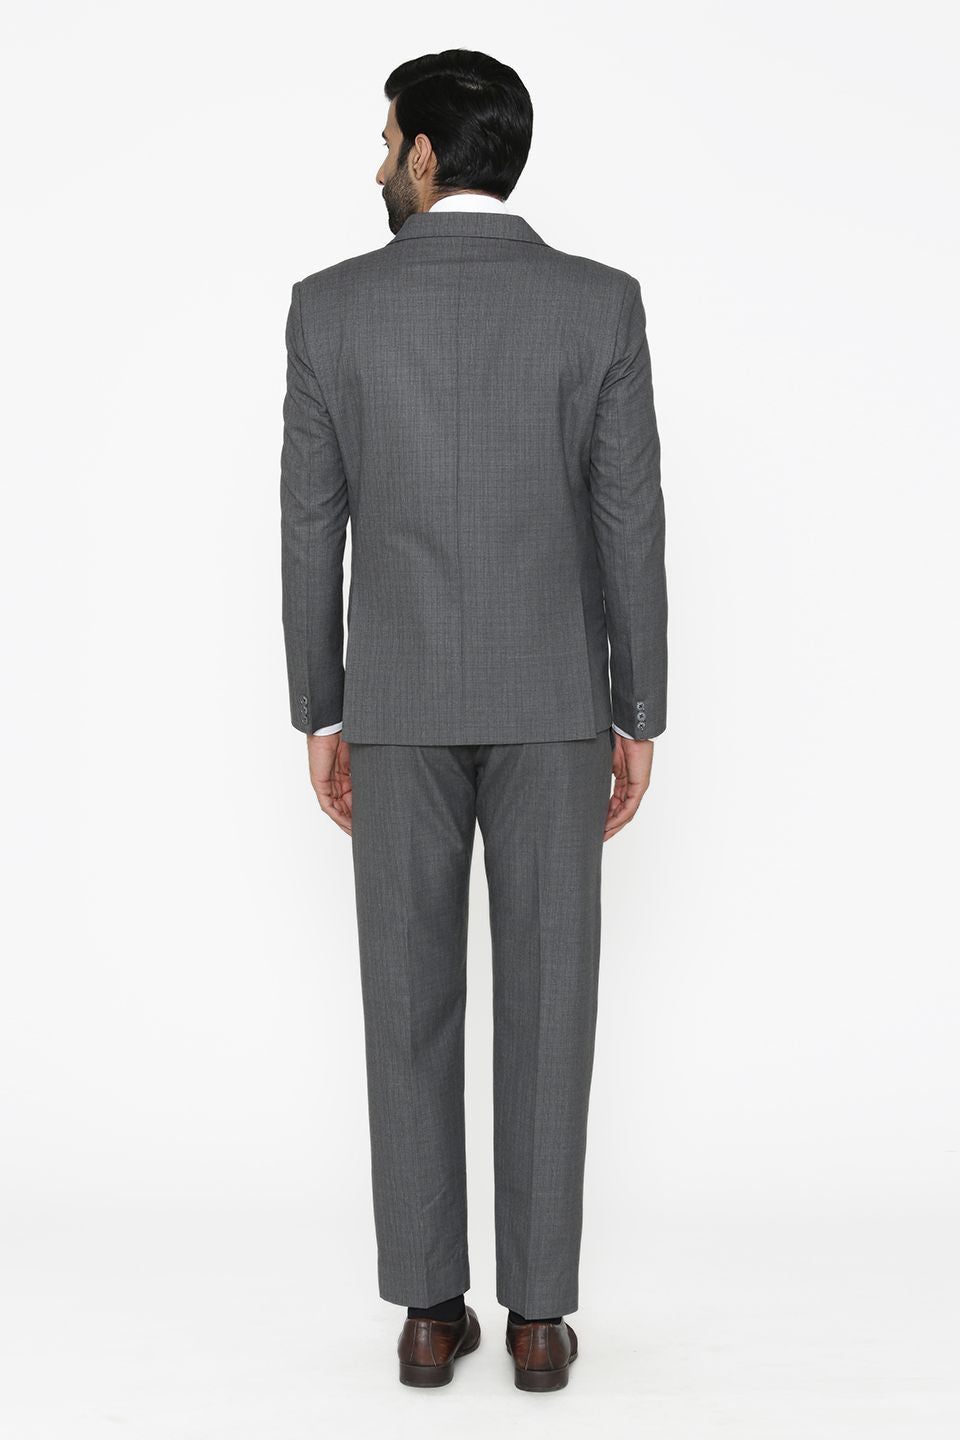 Poly Cotton Grey Suit